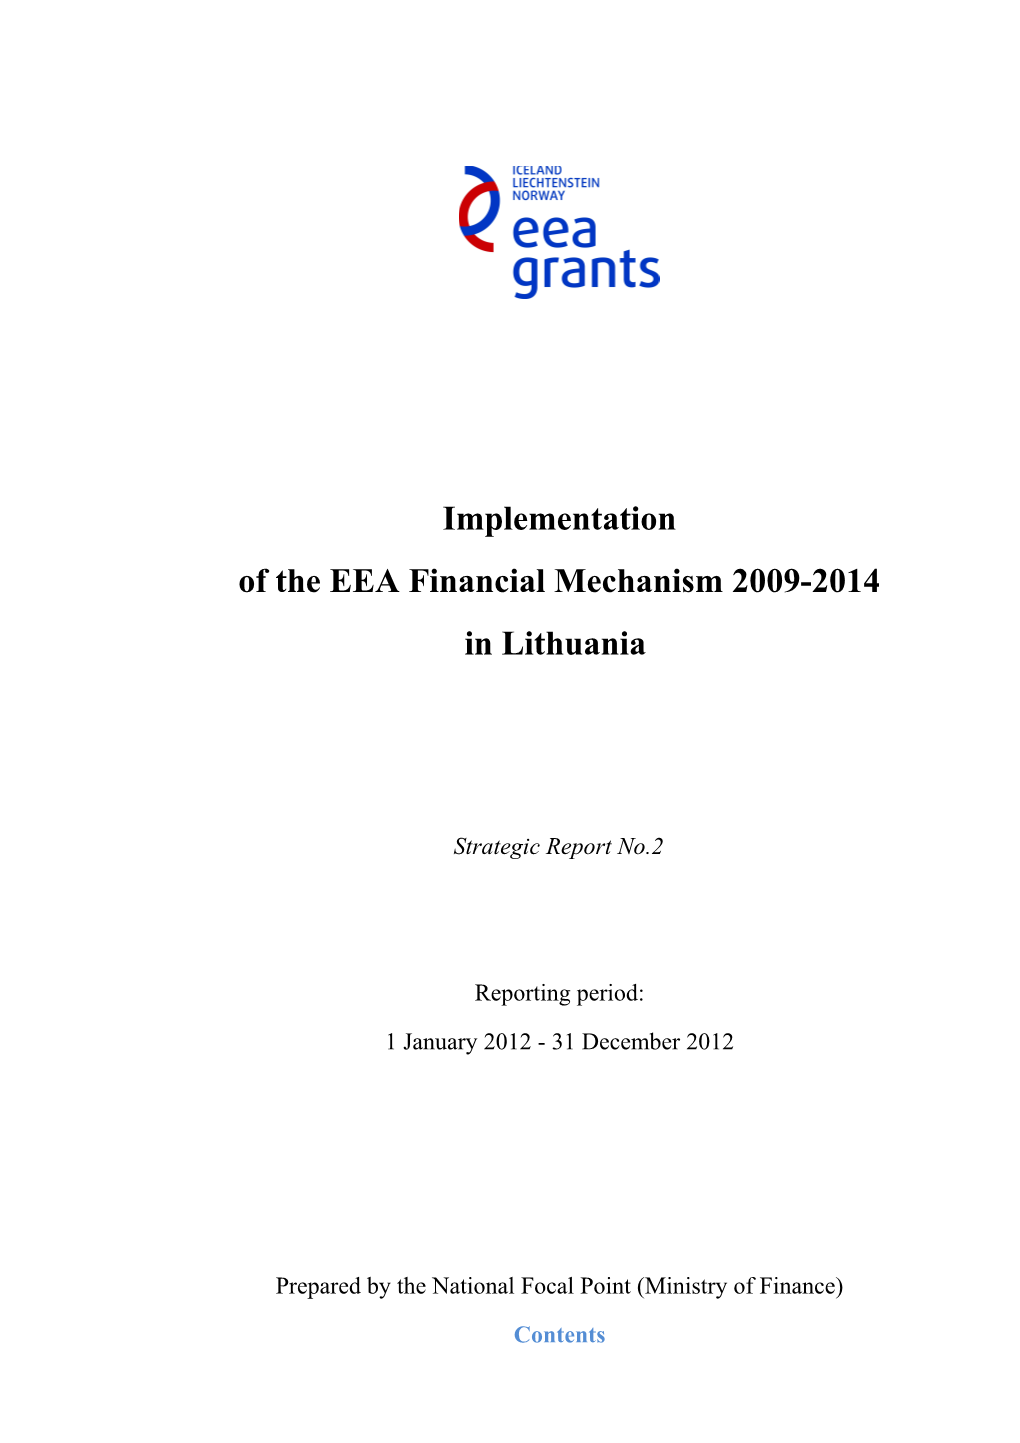 Of the EEA Financial Mechanism 2009-2014